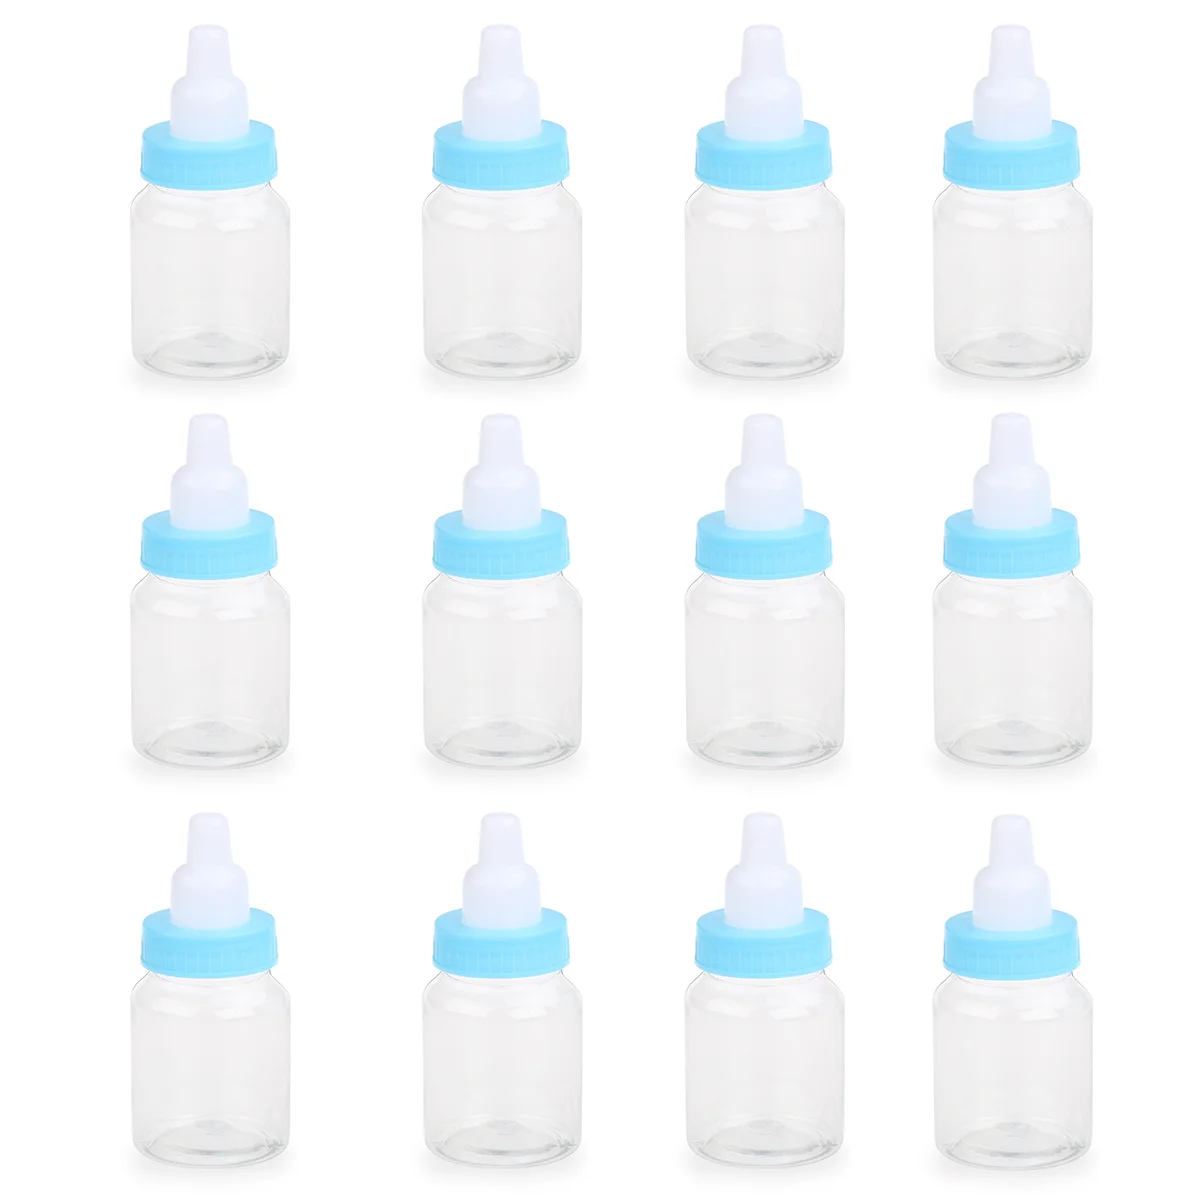 Besportble Kūdikių Buteliukai Miniatiūriniai Plastikinis Buteliukas Baby Shower Naudai Pildomus Saldainių Dėžutė - 0